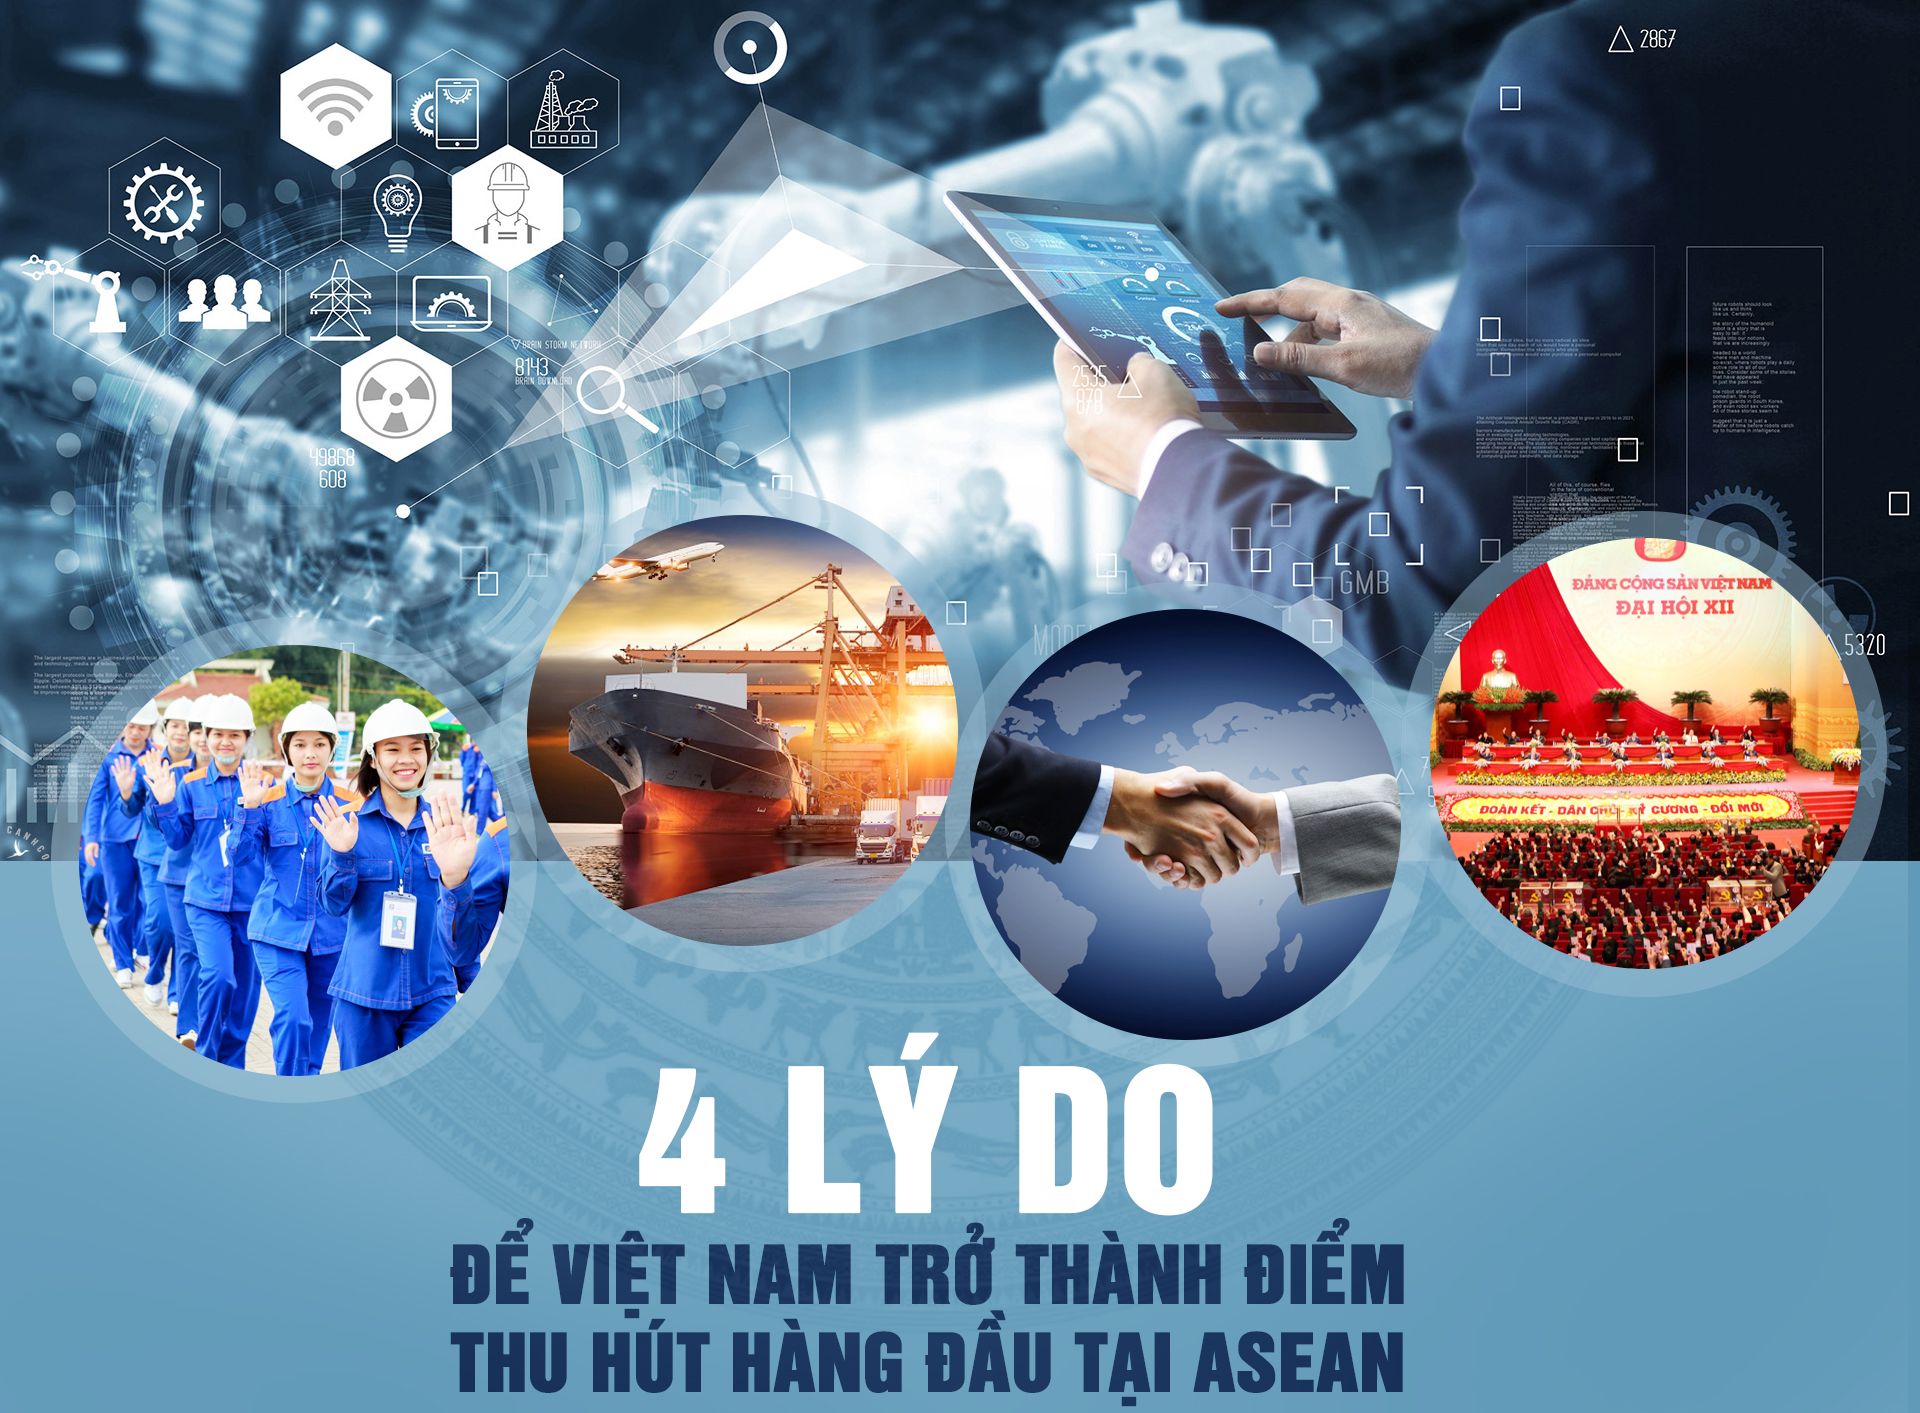 4 lý do để Việt Nam trở thành điểm thu hút hàng đầu tại ASEAN